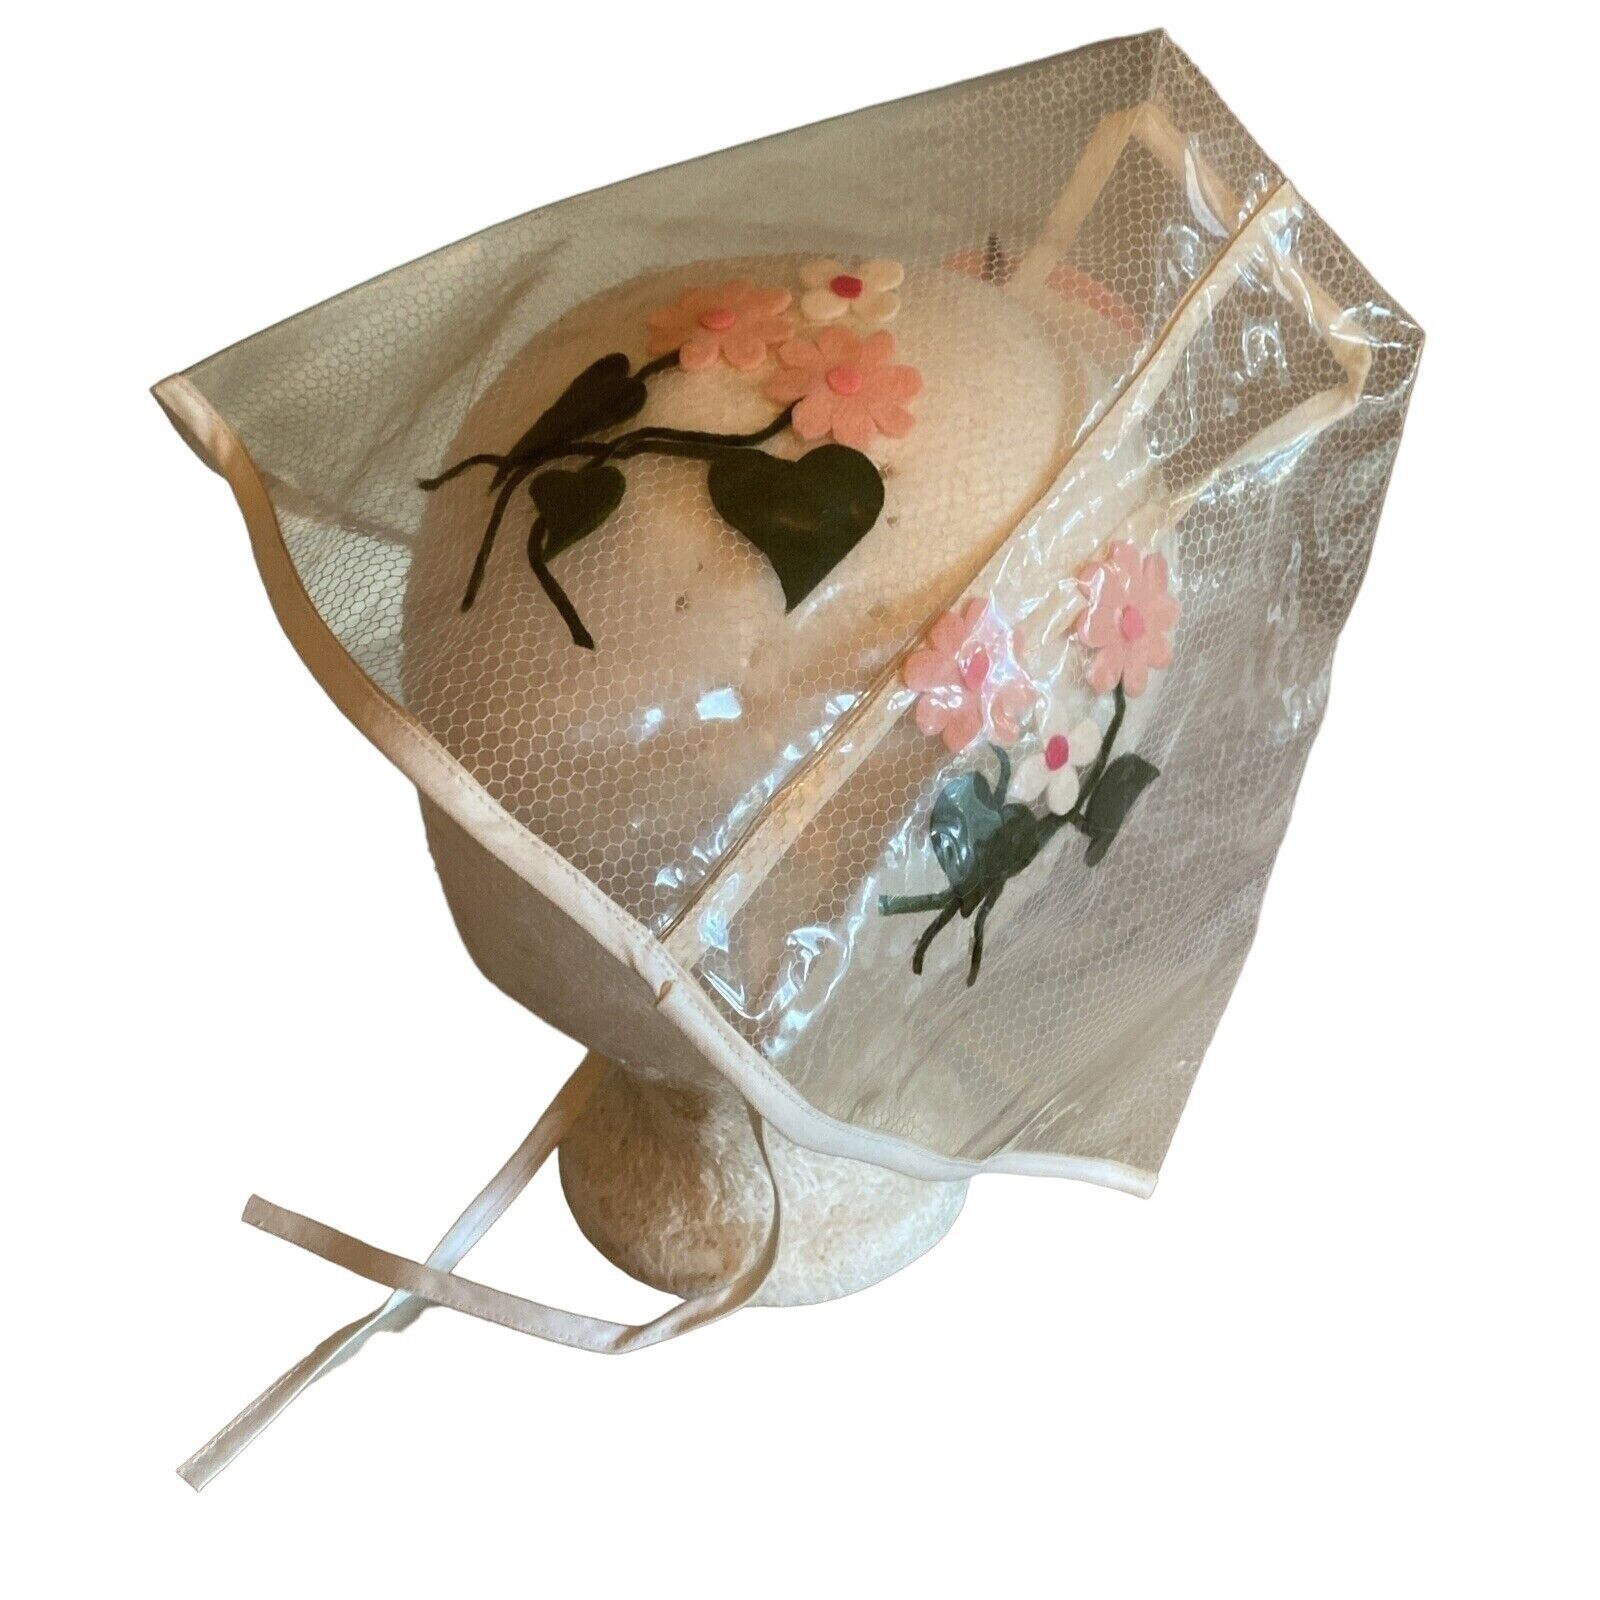 Vintage 1960s Plastic Raincap Tent Hat Pink Felt Daisies Flowers Psychedelic Mod